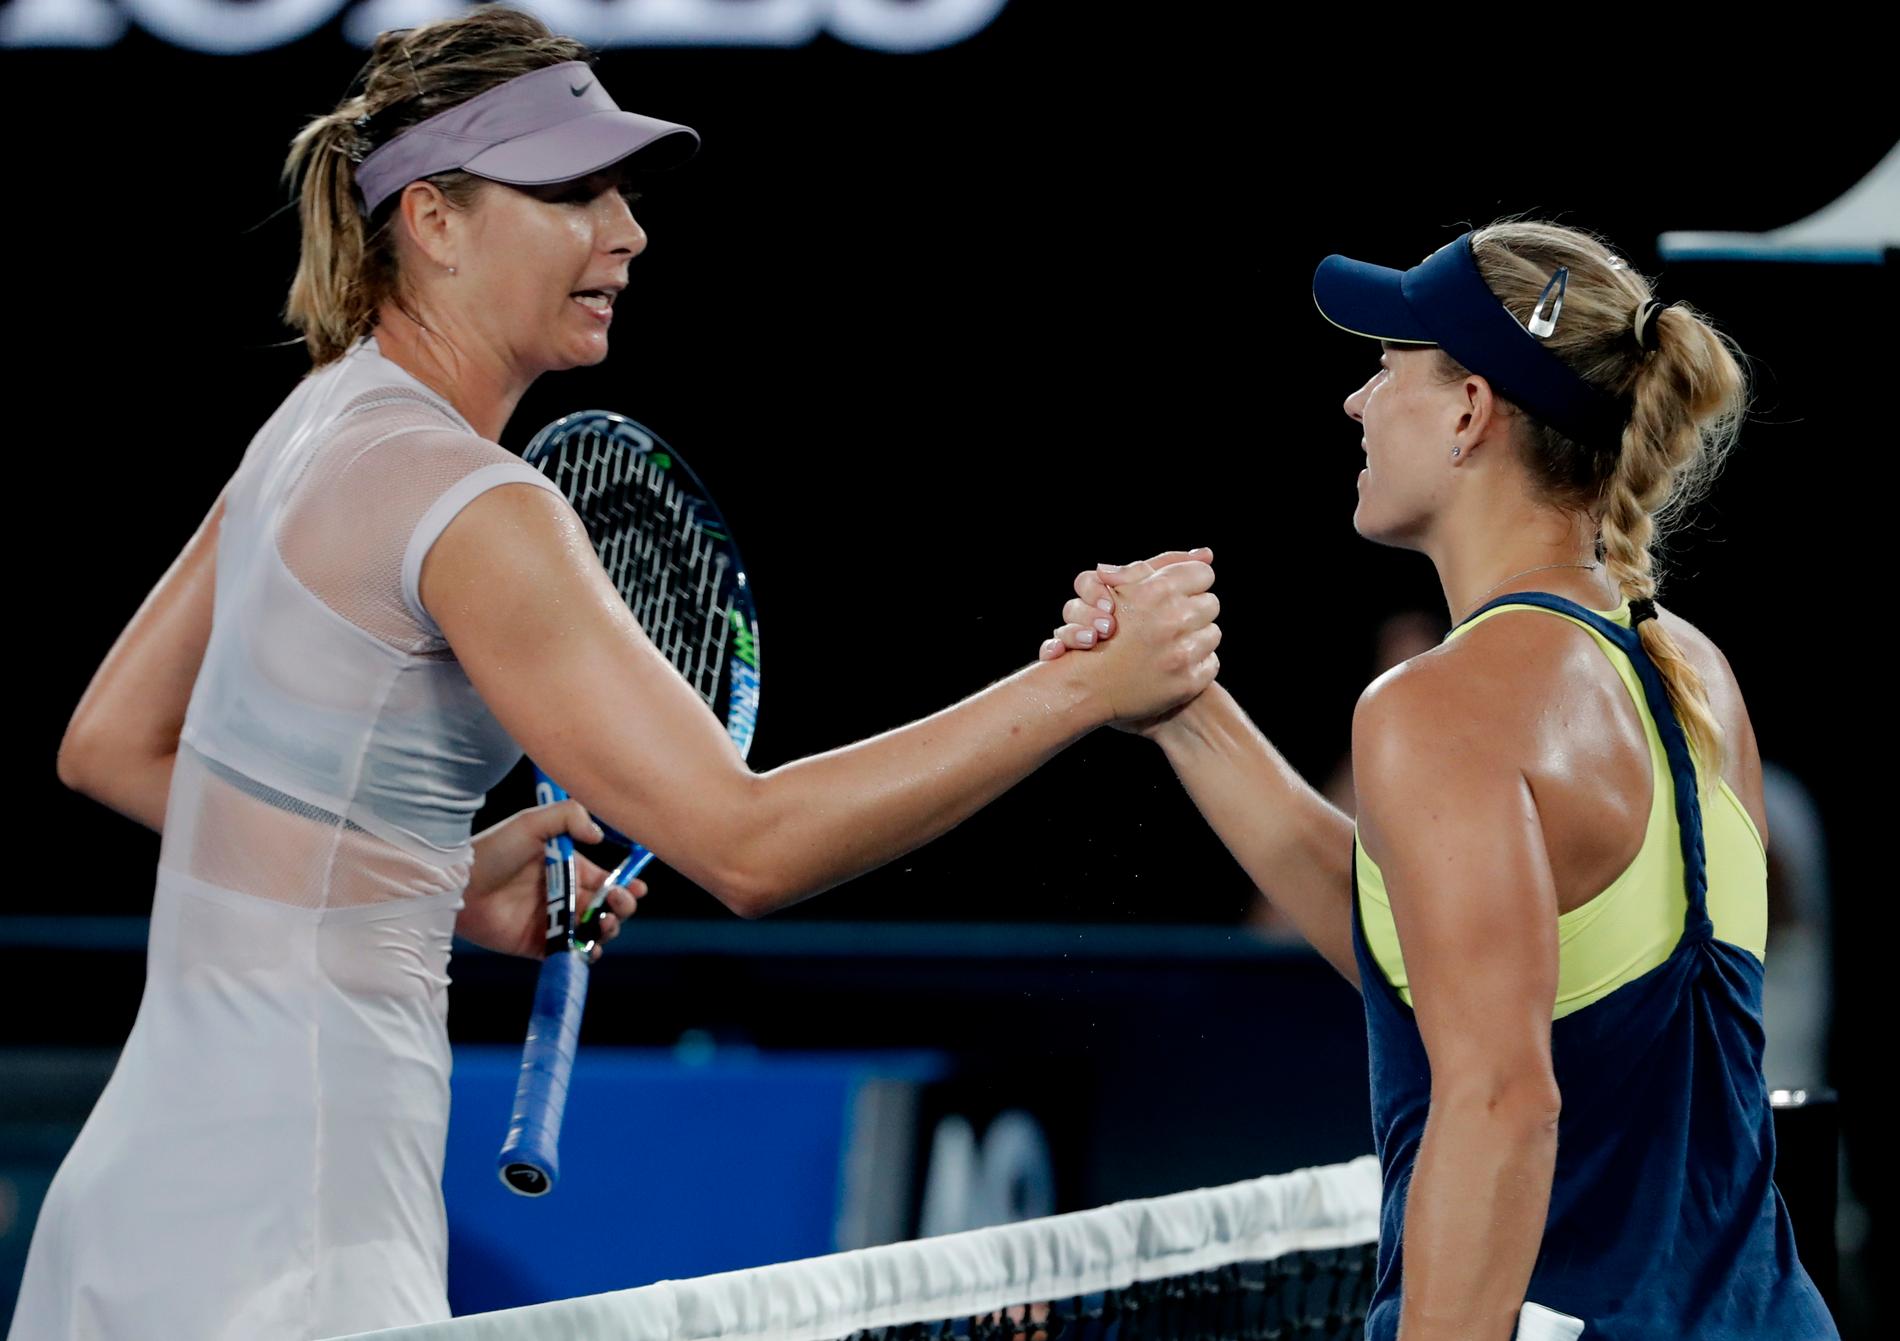 Angelique Kerber, till höger, skakar Maria Sjarapovas hand efter segern i den tredje omgången av Australian Opens damsingelturnering.